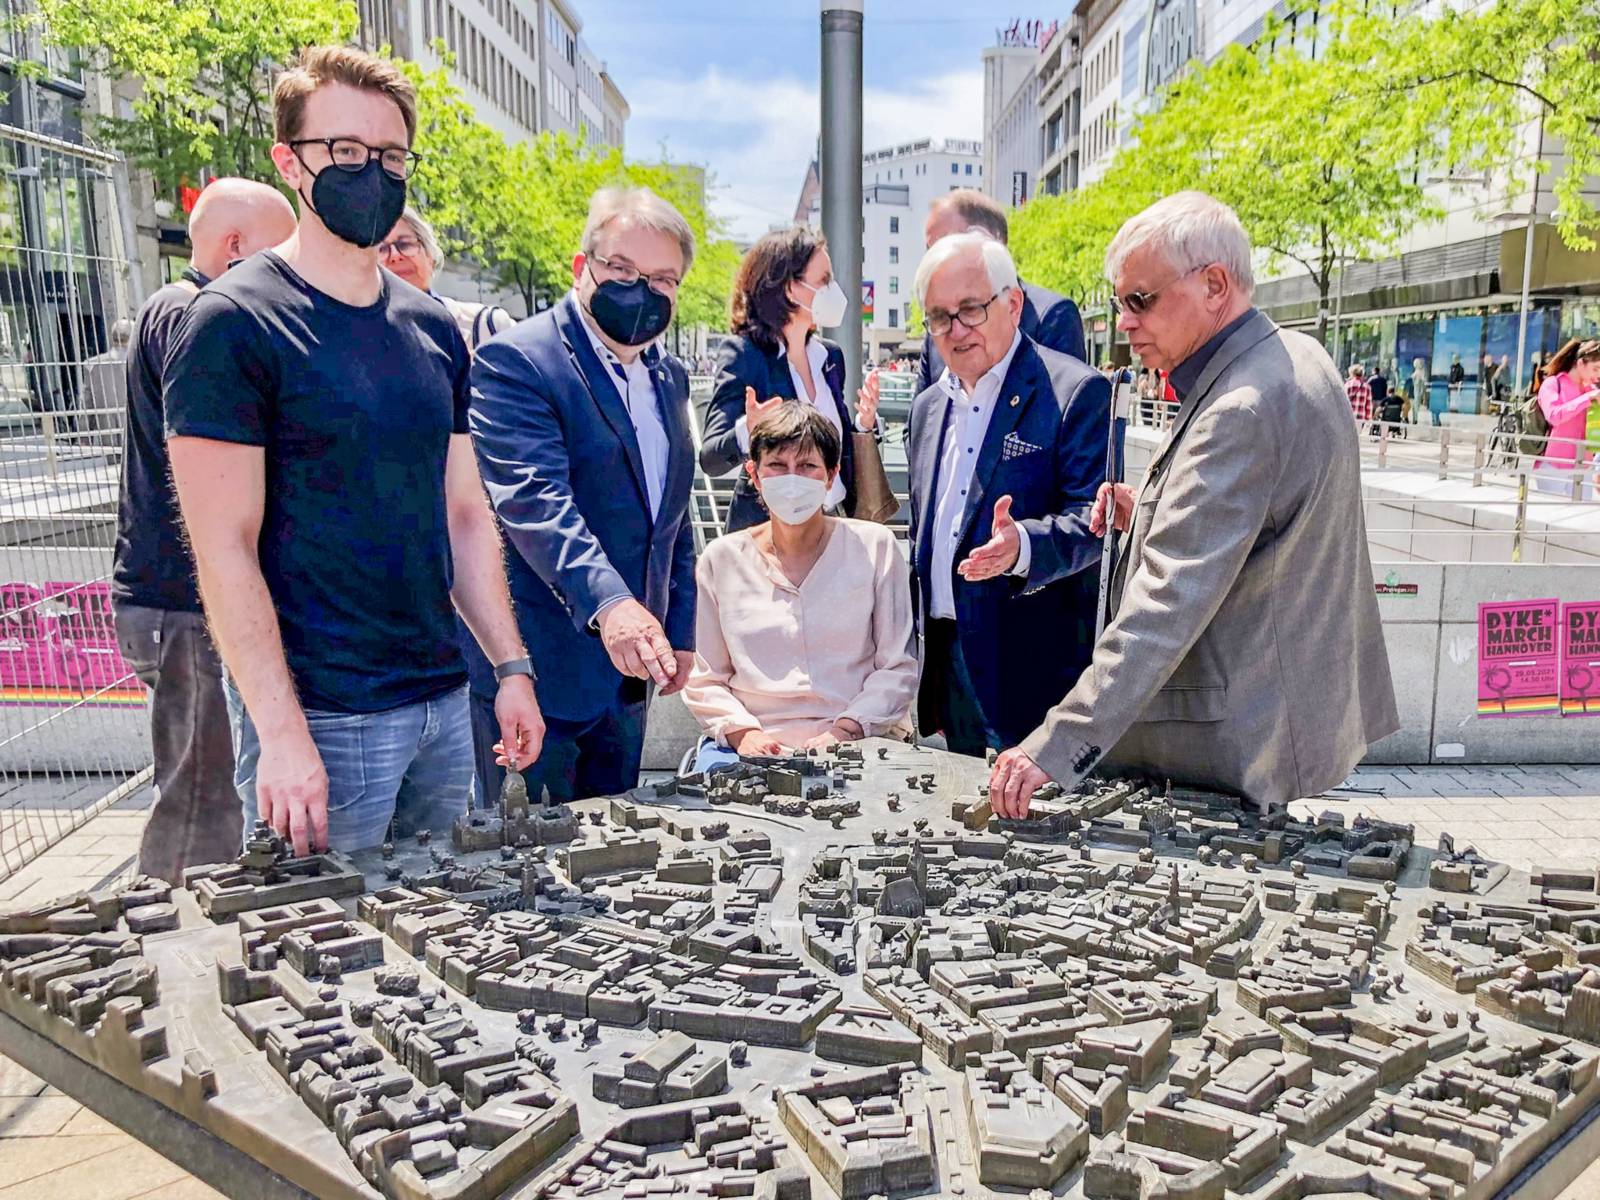 Fünf Personen an einem Modell der hannoverschen Innenstadt für Sehbehinderte